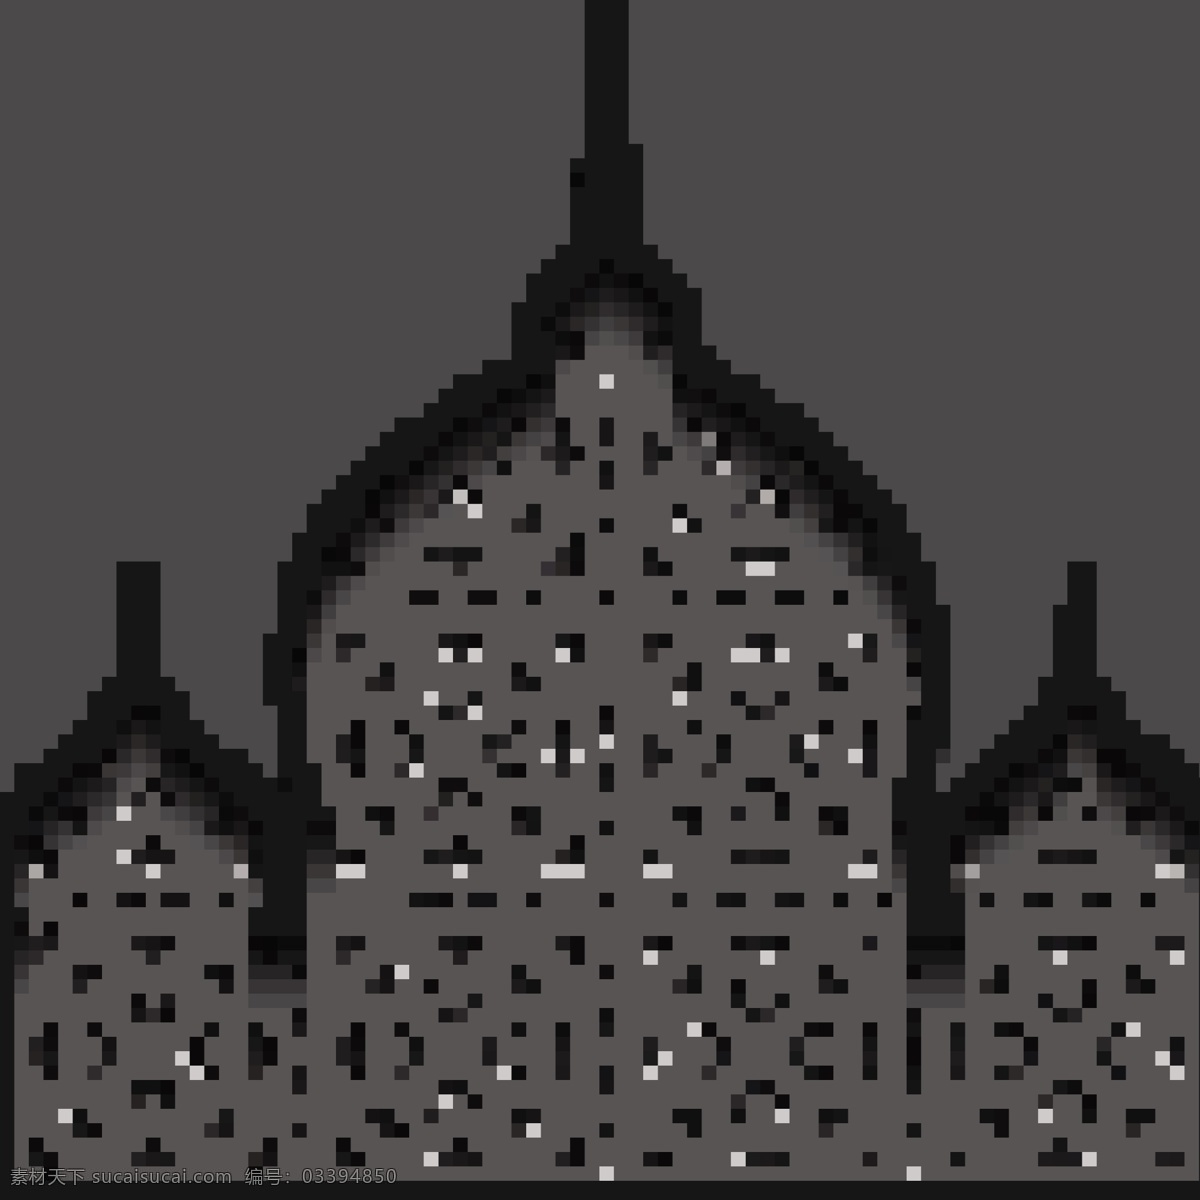 城堡 名 族 风 简约 矢量 填充 背景 建筑 高楼 几何图案 背景素材 创意设计 贺卡背景